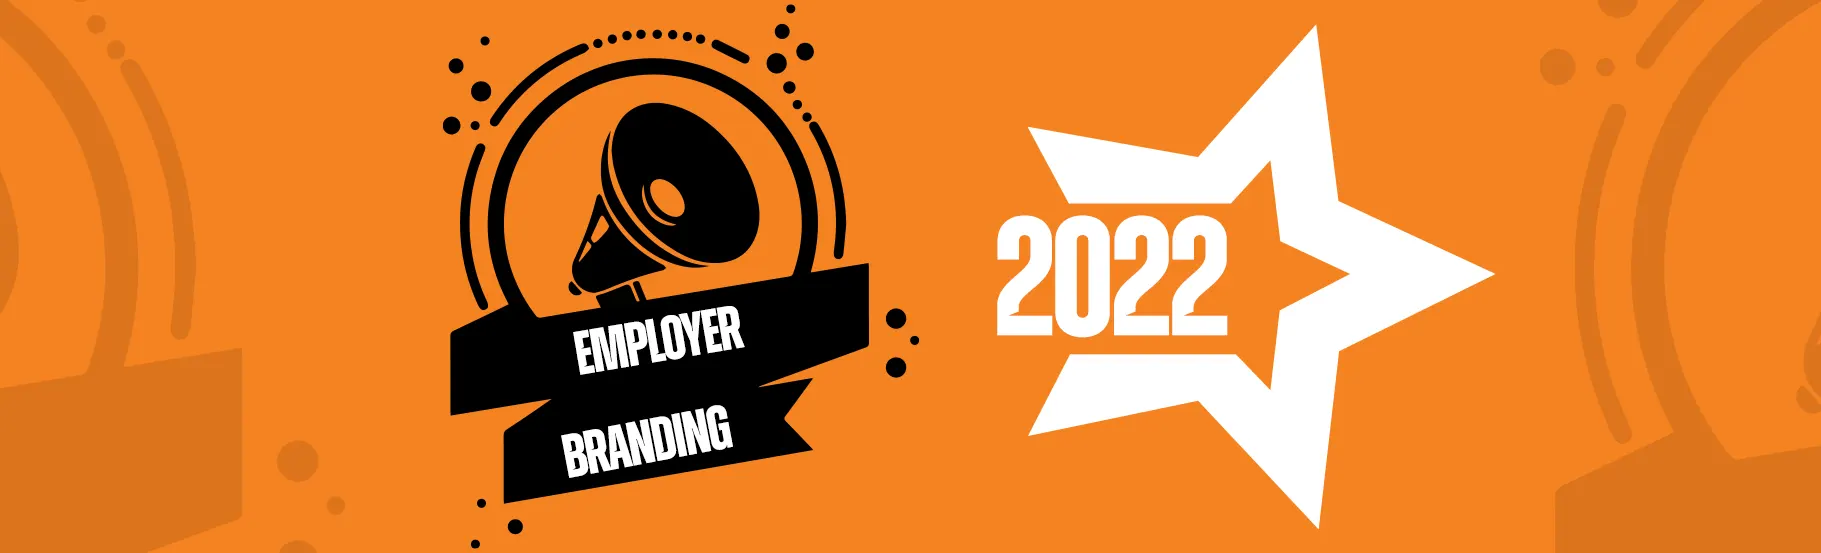 Top trends in employer branding in 2022